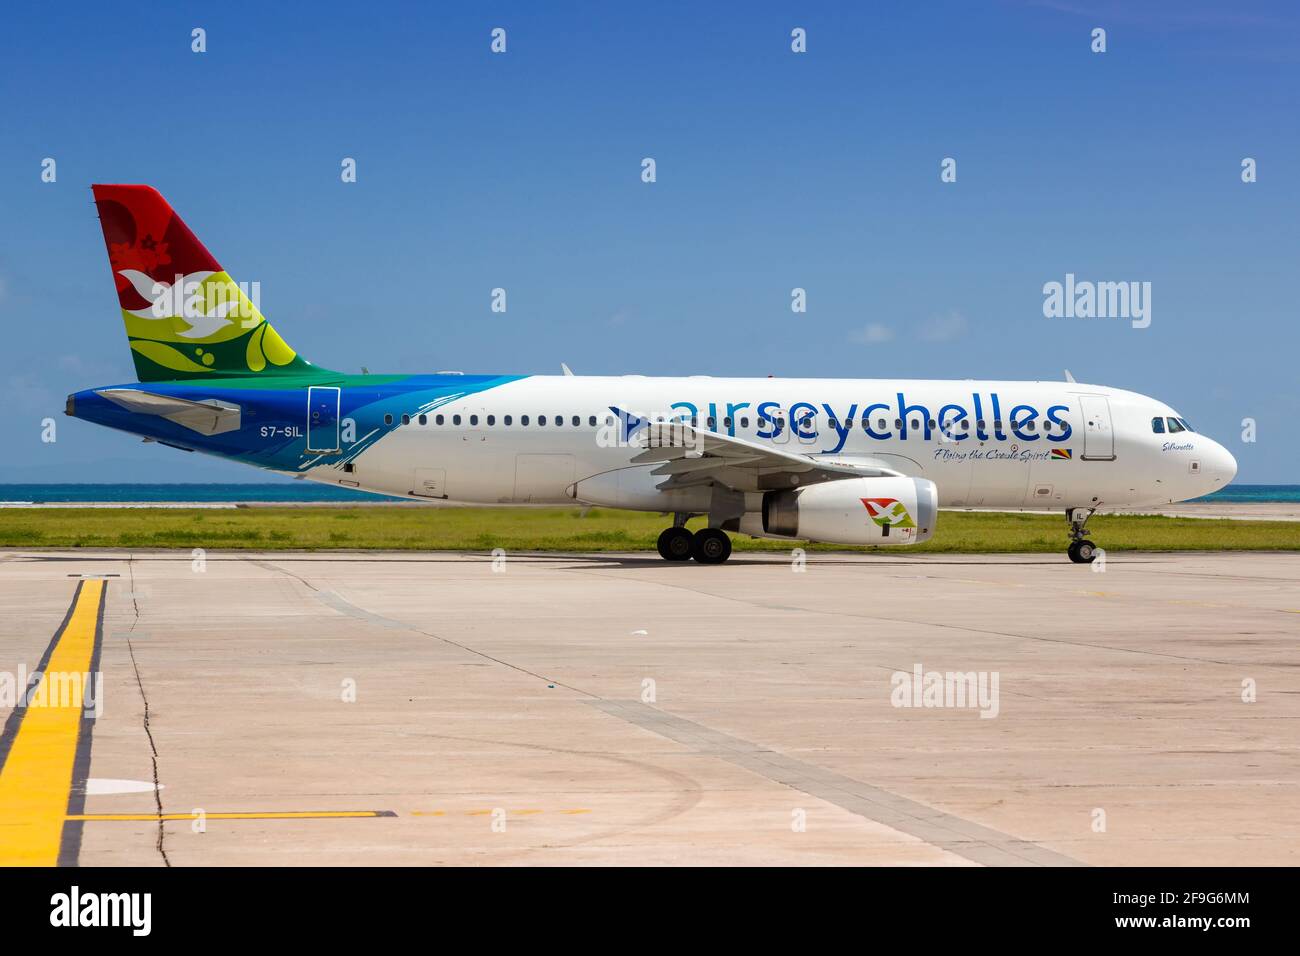 Mahé, Seychelles - 26 novembre 2017 : avion Airbus A320 d'Air Seychelles à l'aéroport international des Seychelles (SEZ) aux Seychelles. Airbus est un EUR Banque D'Images